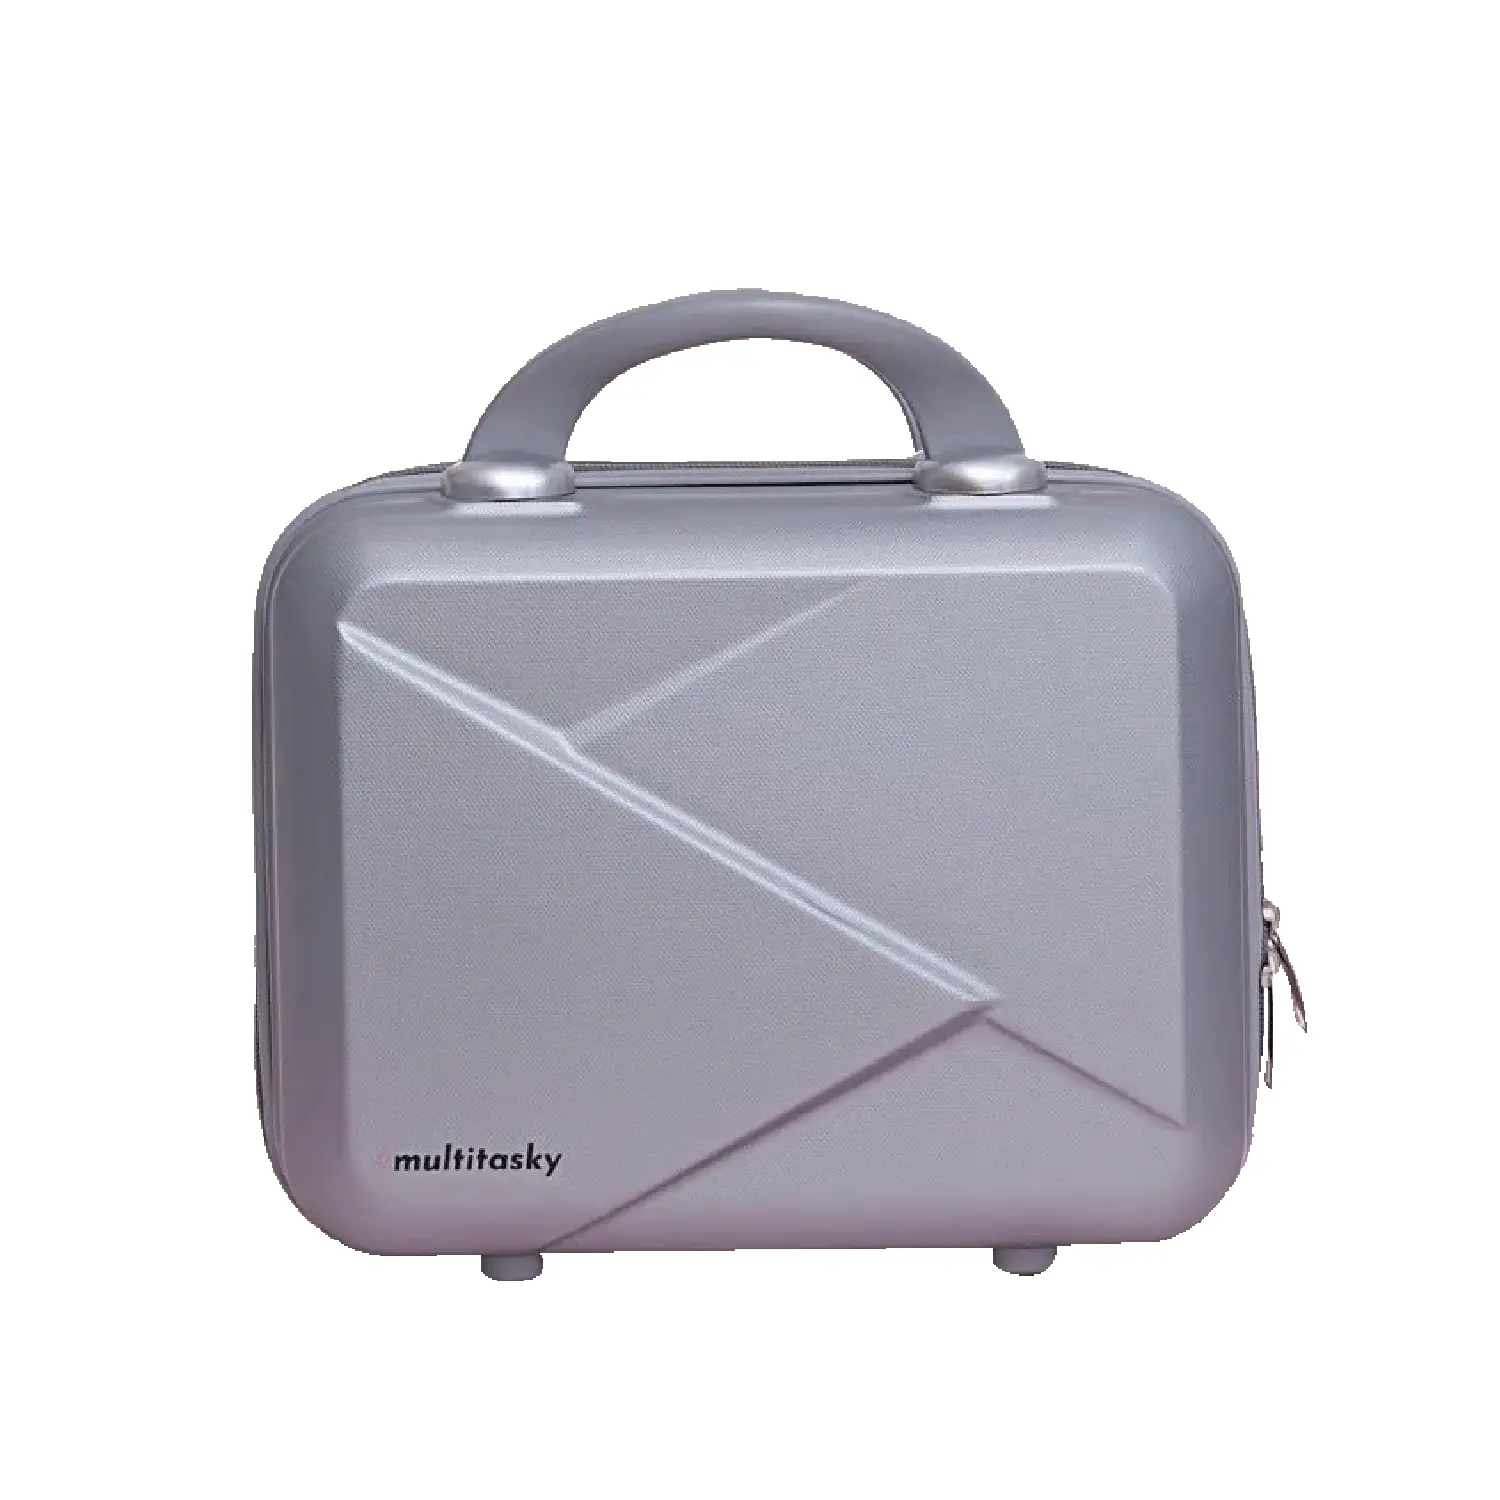 Multi-Functional Mini Suitcase